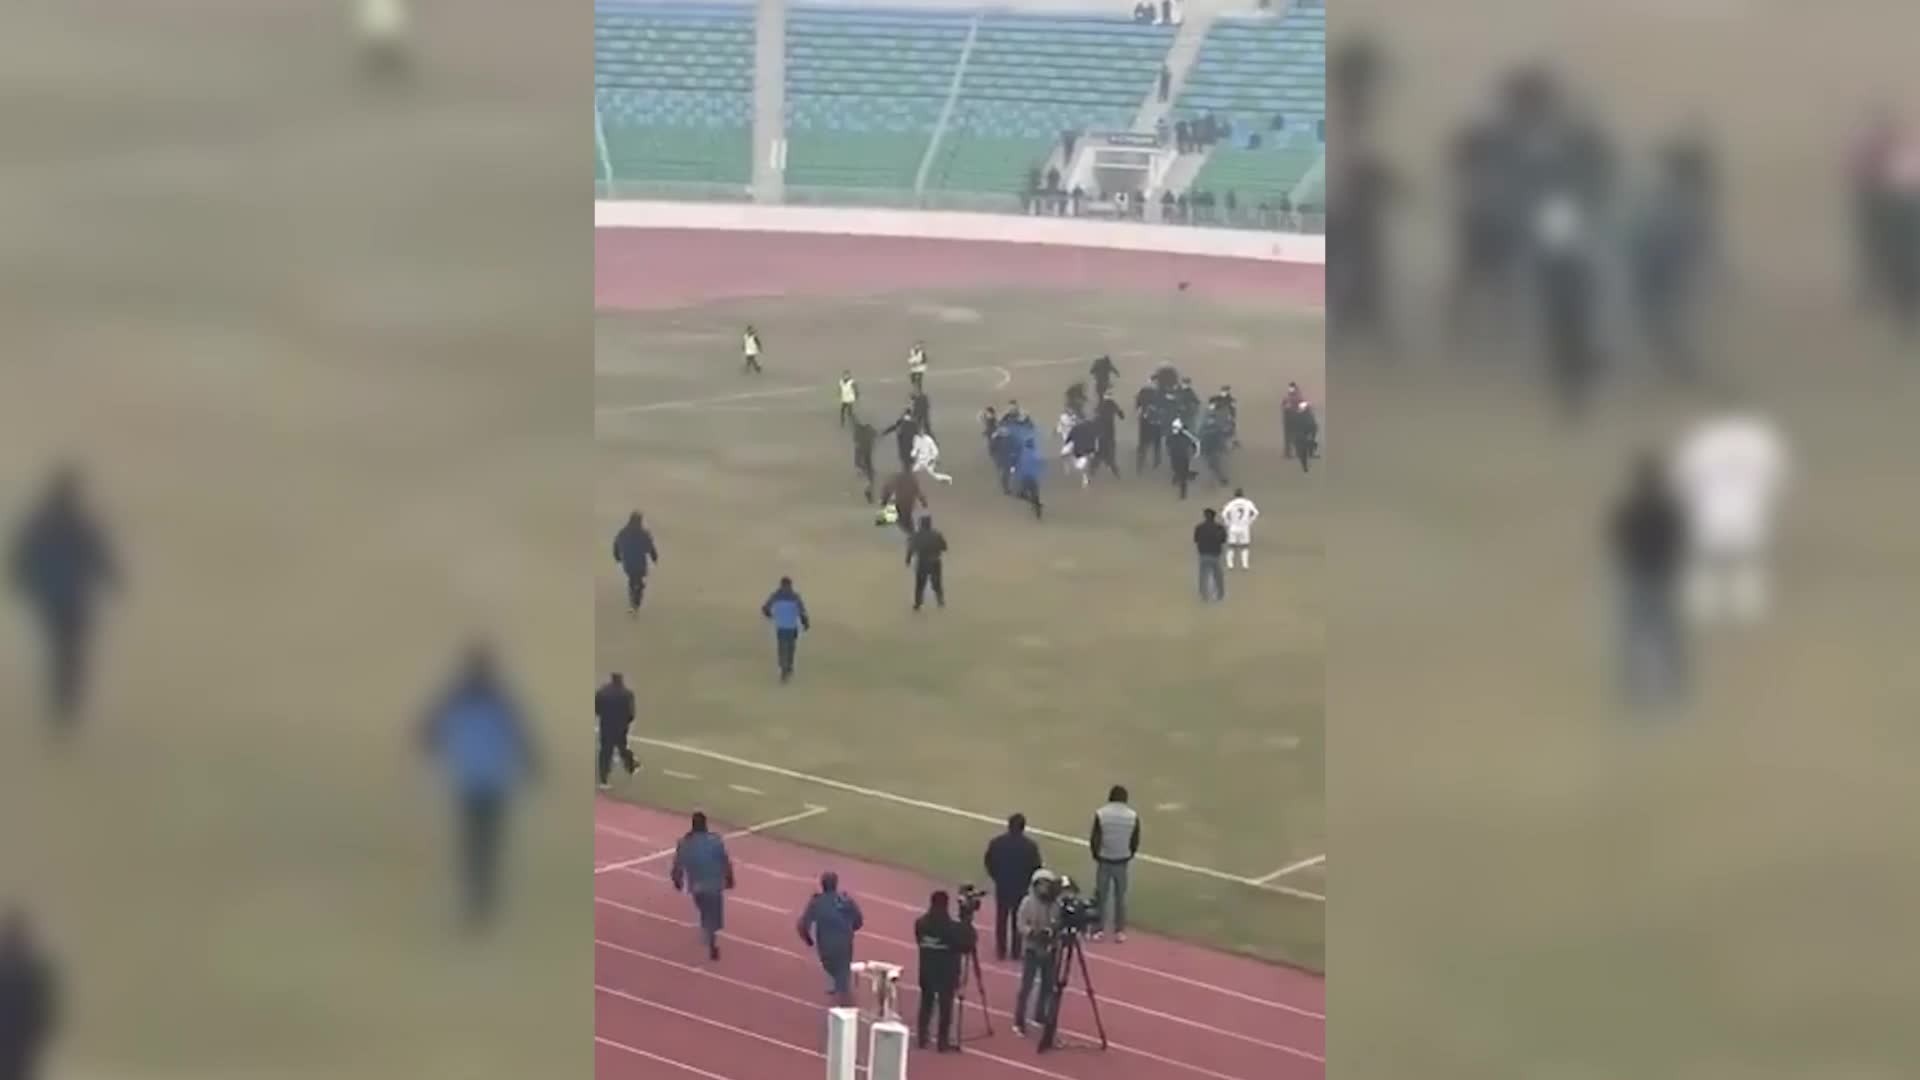 Video - Clip: Cay cú vì thua trận, cầu thủ song phi đạp ngã trọng tài trên sân